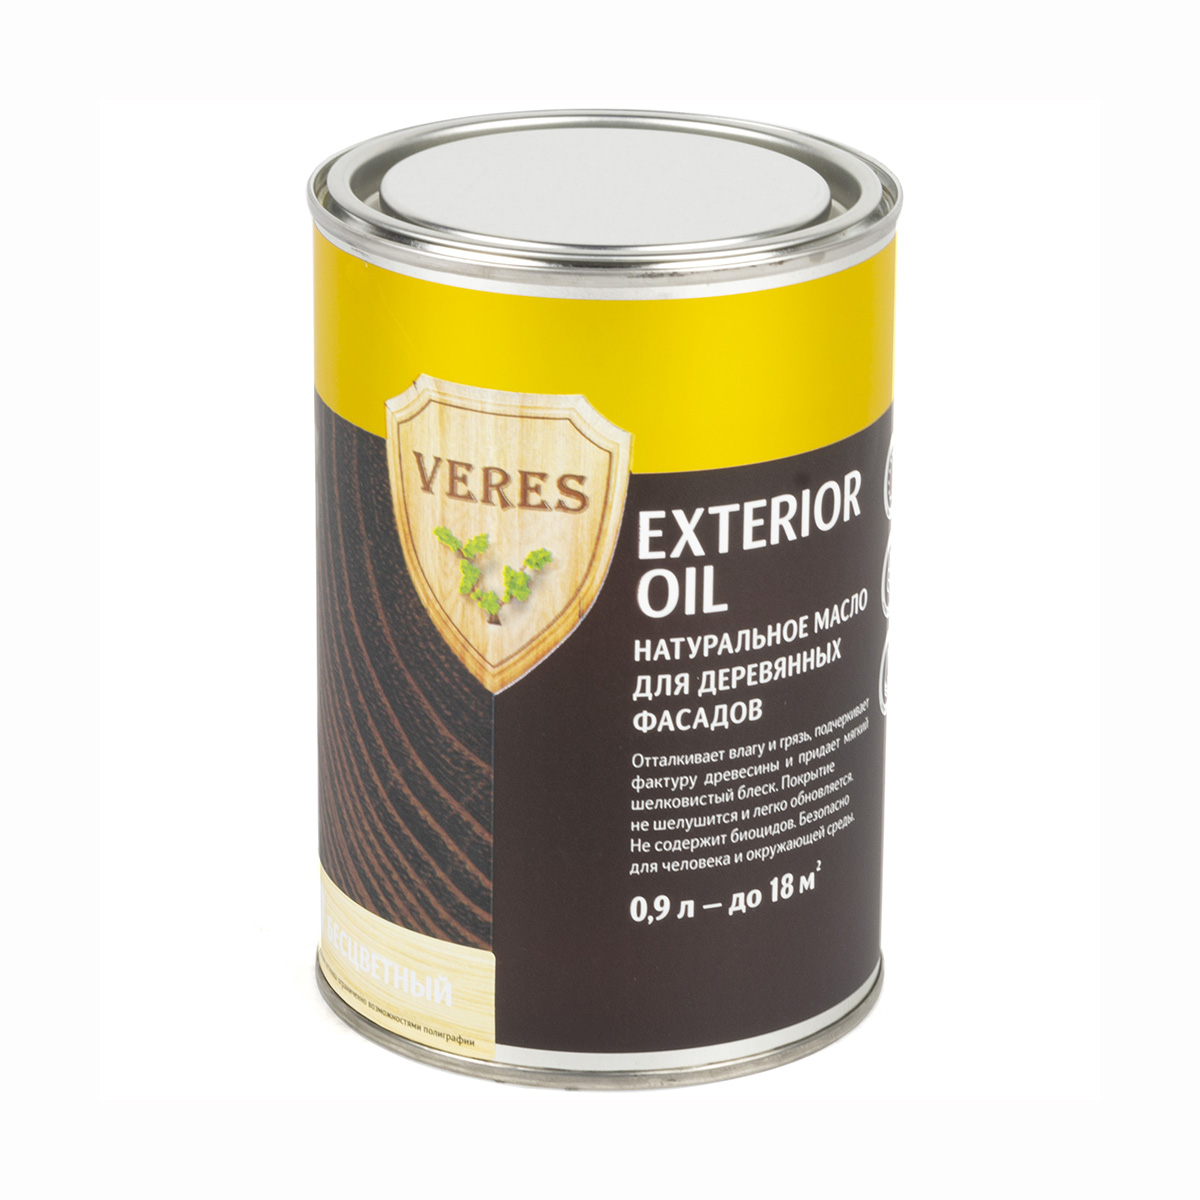 Верес масло для наруж. работ  "oil exterior" № 1 бесцветный  0,9 л (1/6) "veres"